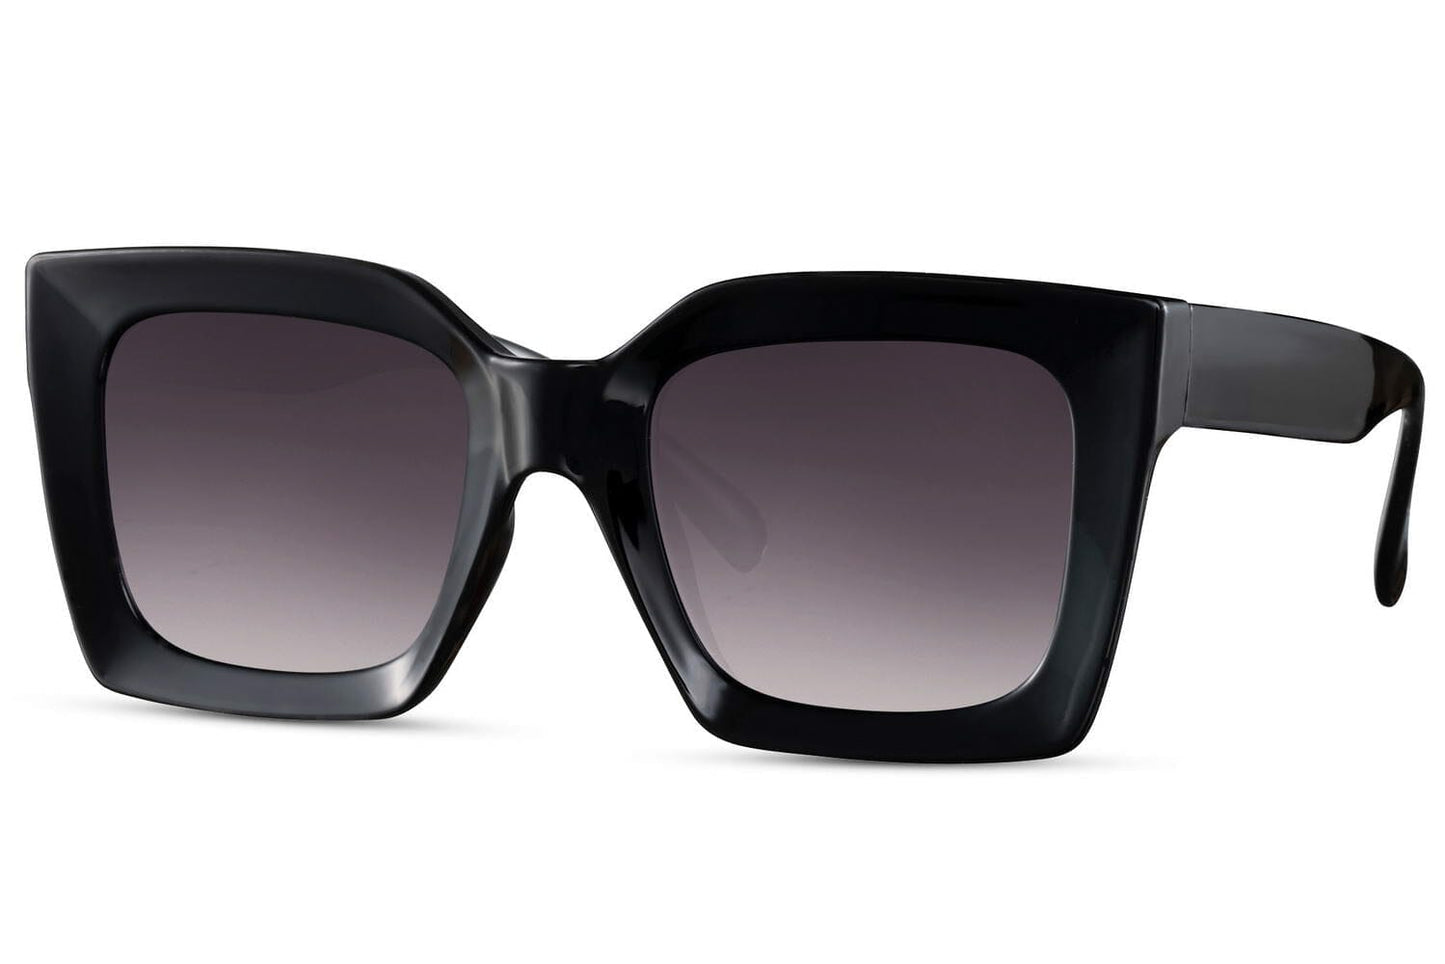 Large black sunglasses. Dark lenses. Gradient lenses. Acetate square sunglasses.